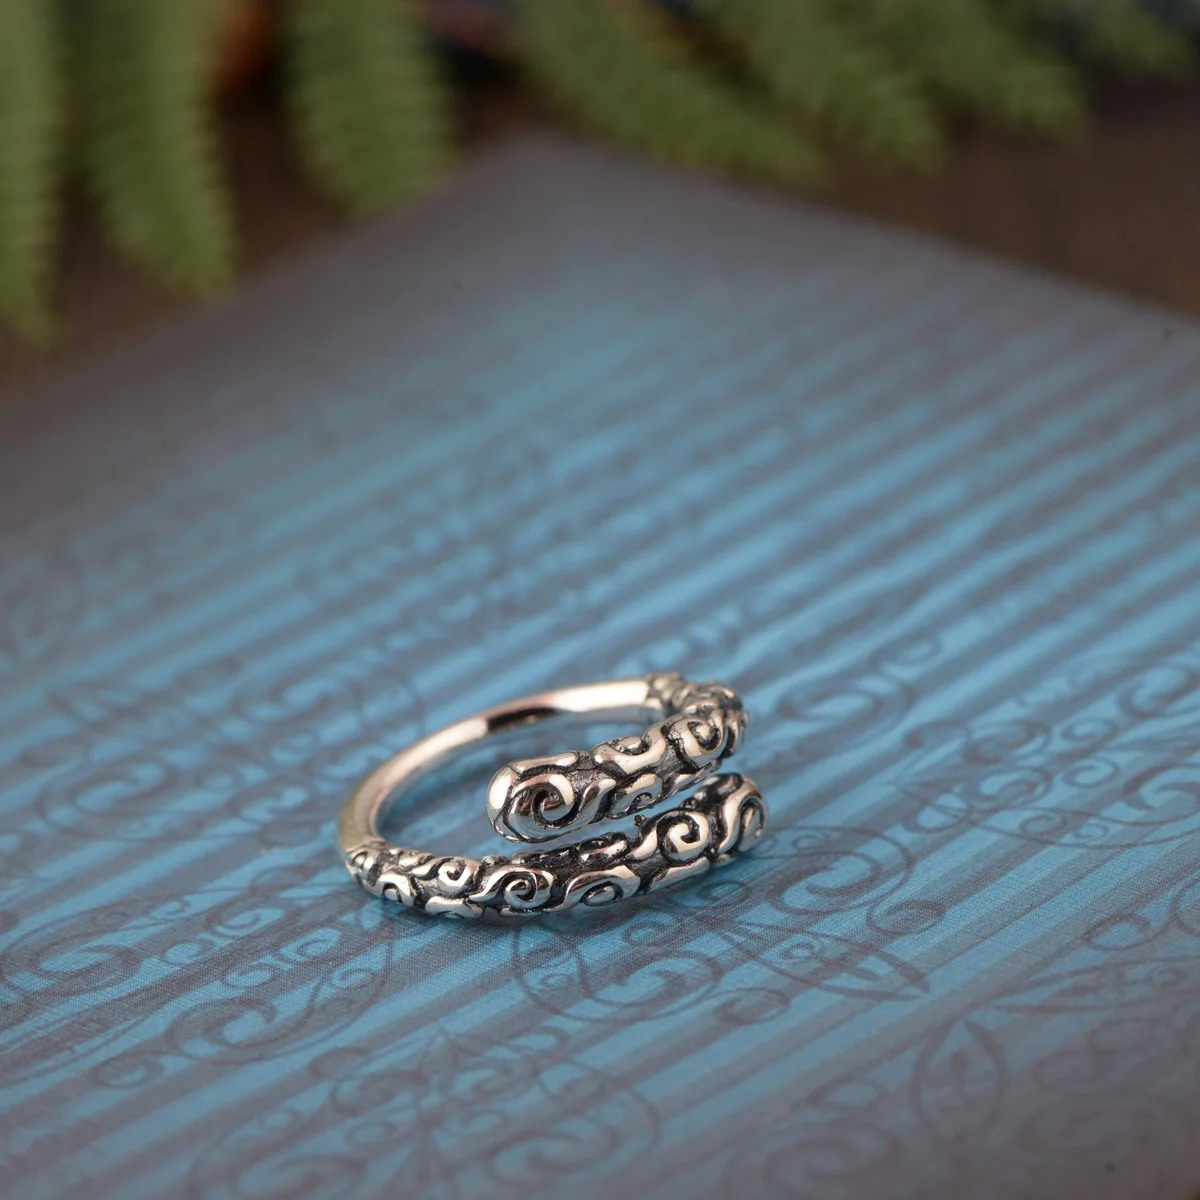 S990 тайский серебро восстановление древних способов процесс отличной форме кольца открытие женская модель